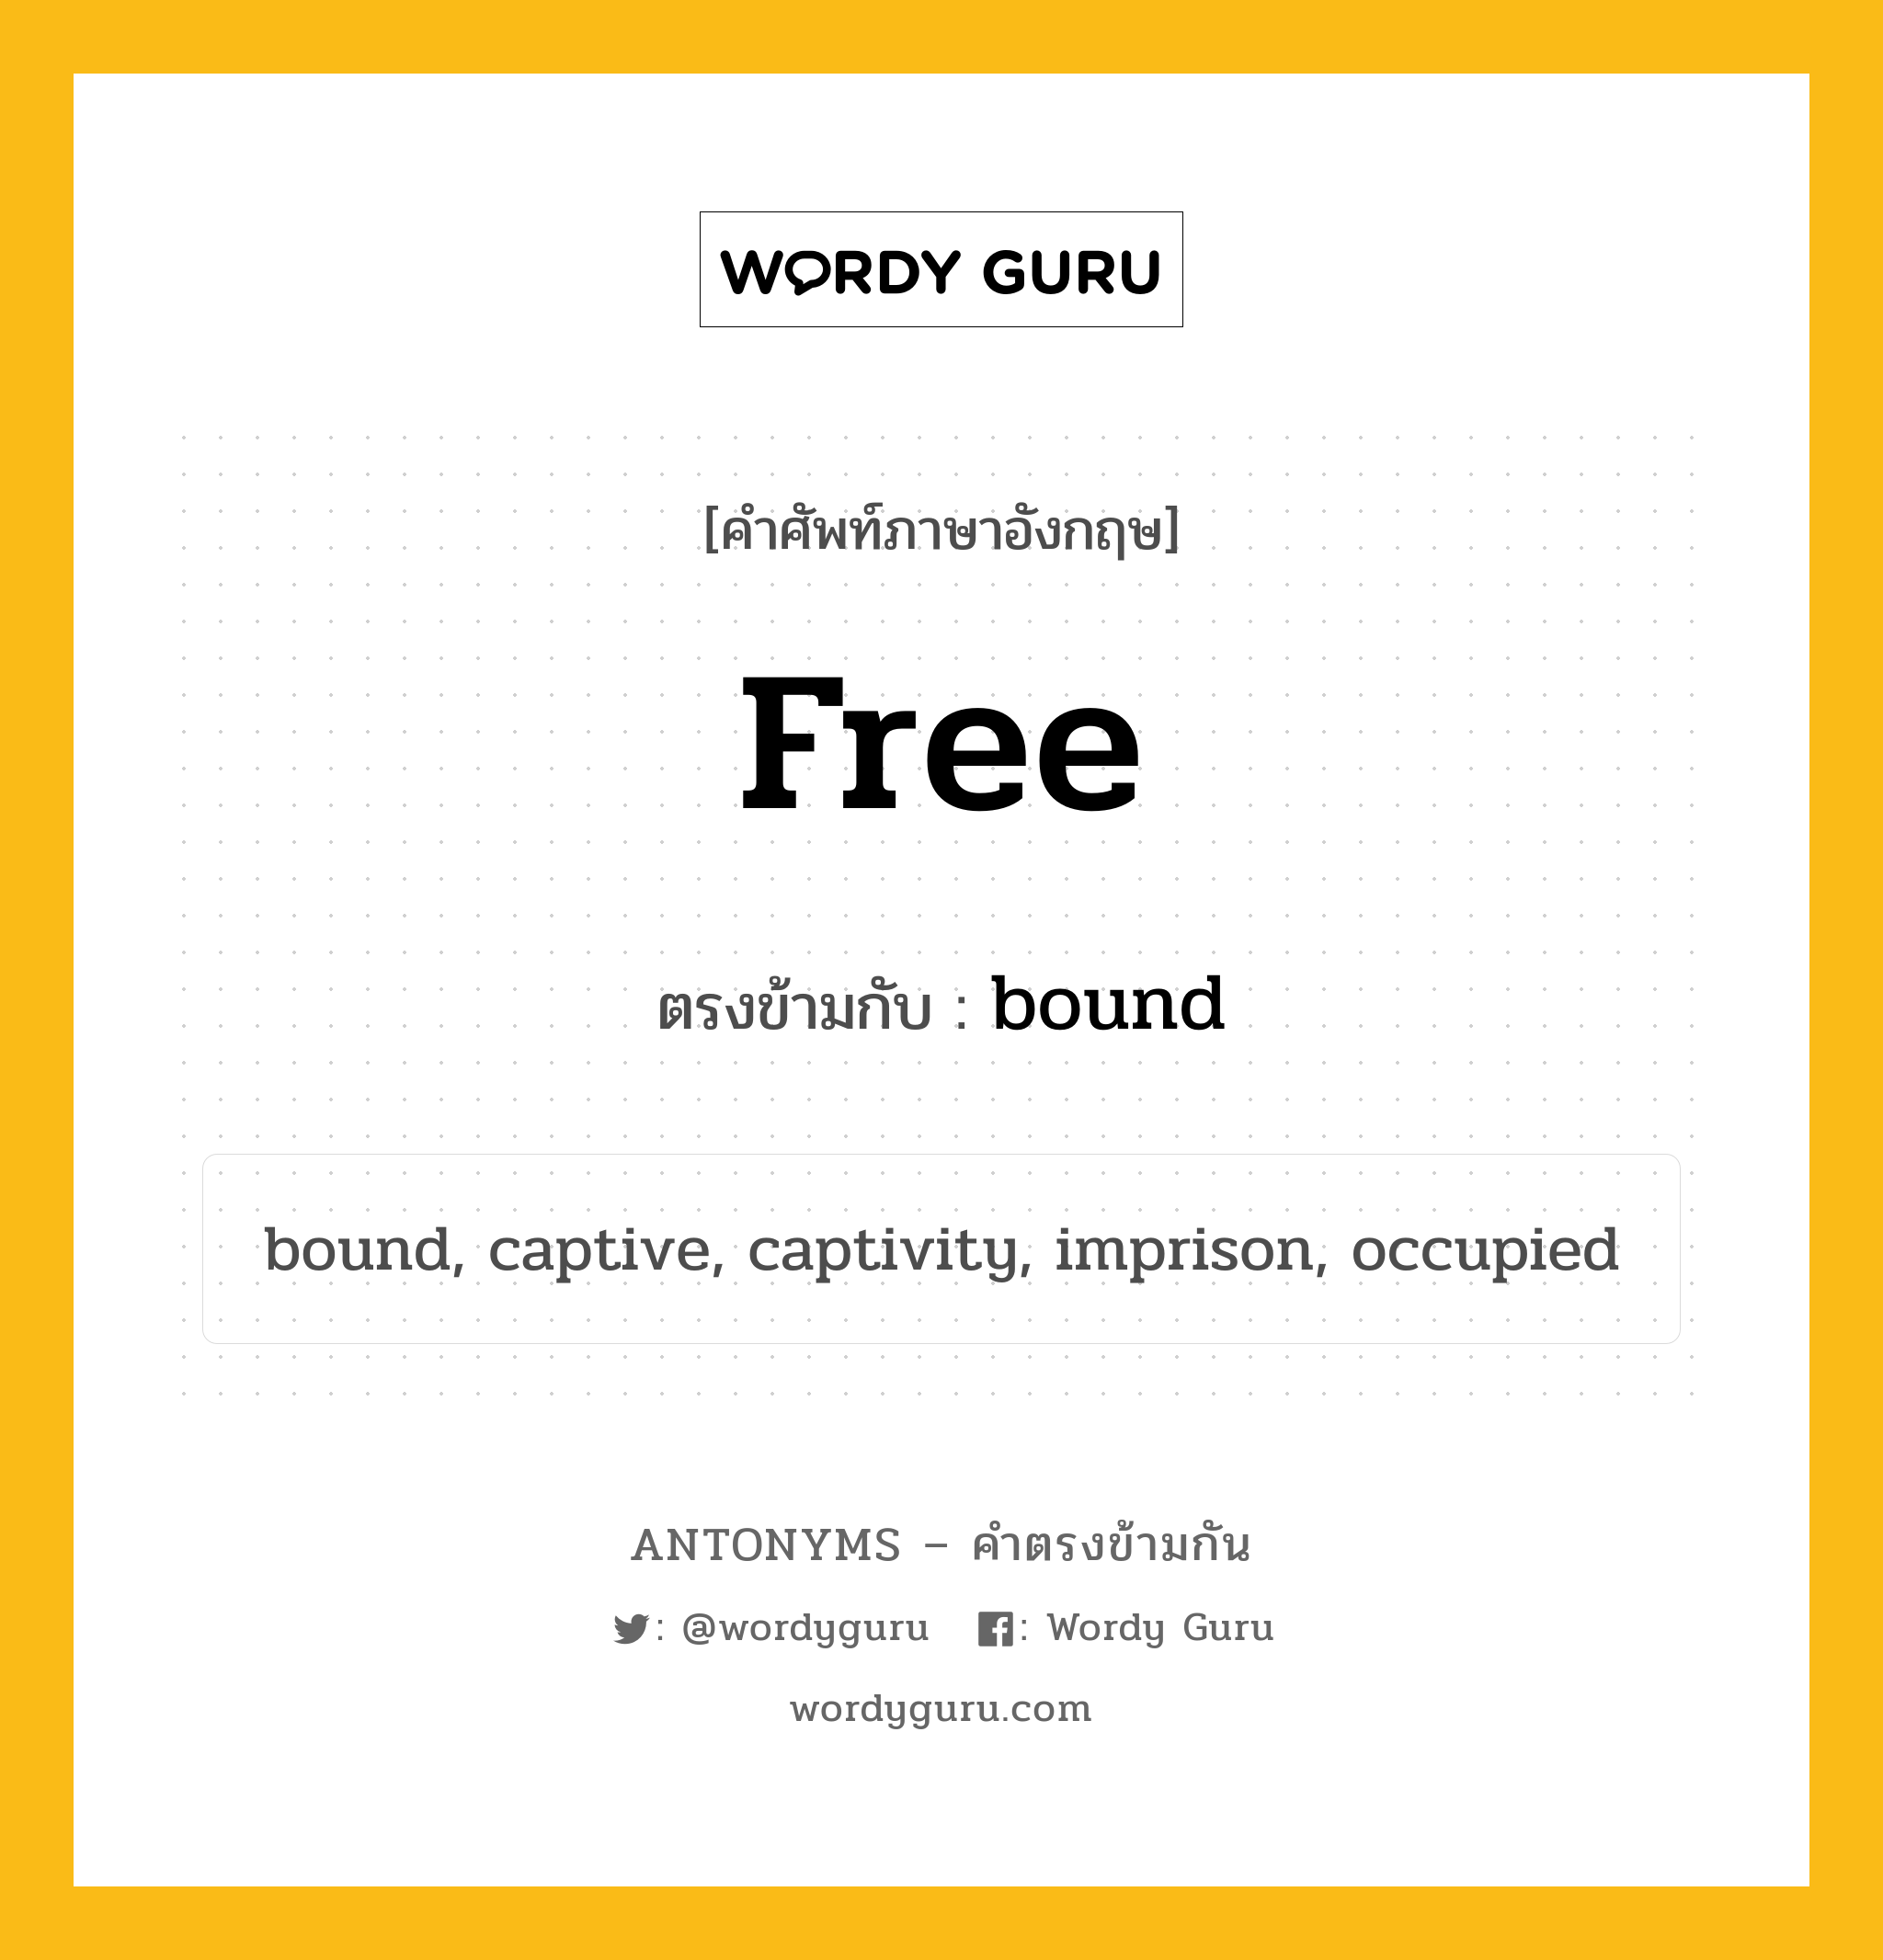 free เป็นคำตรงข้ามกับคำไหนบ้าง?, คำศัพท์ภาษาอังกฤษ free ตรงข้ามกับ bound หมวด bound